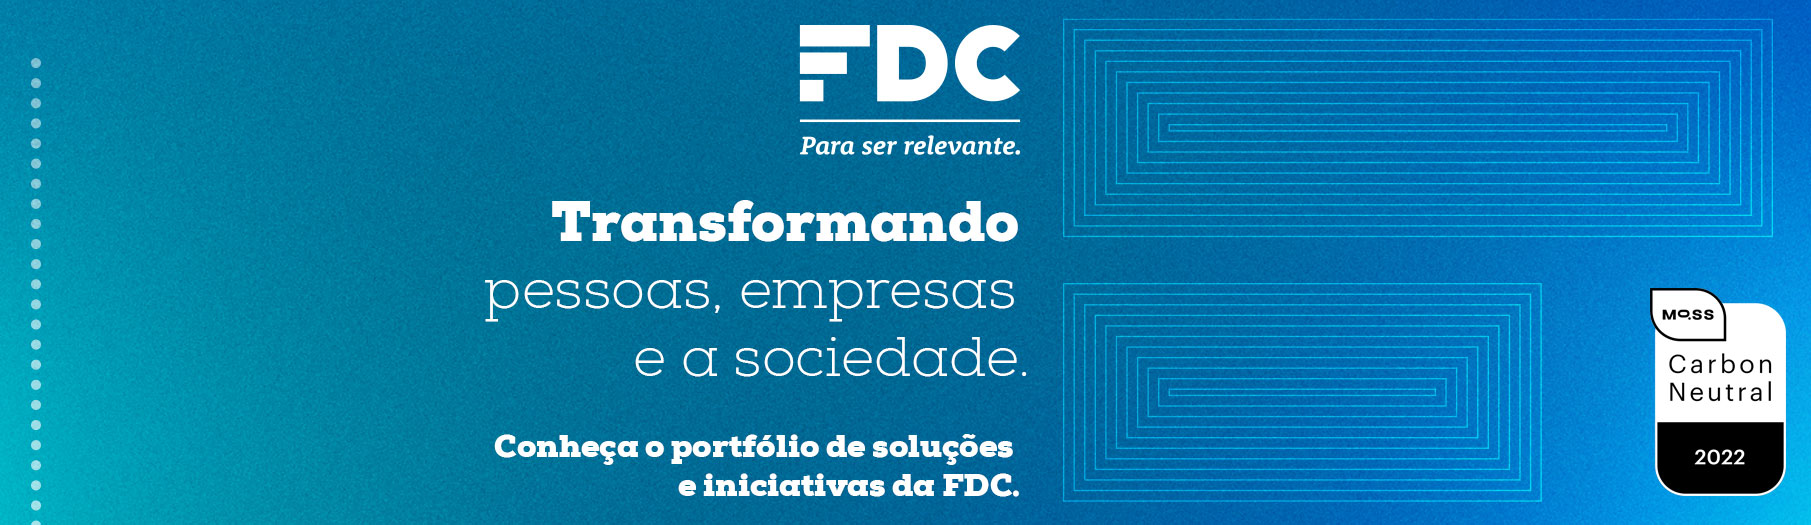 FDC - Fundação Dom Cabral